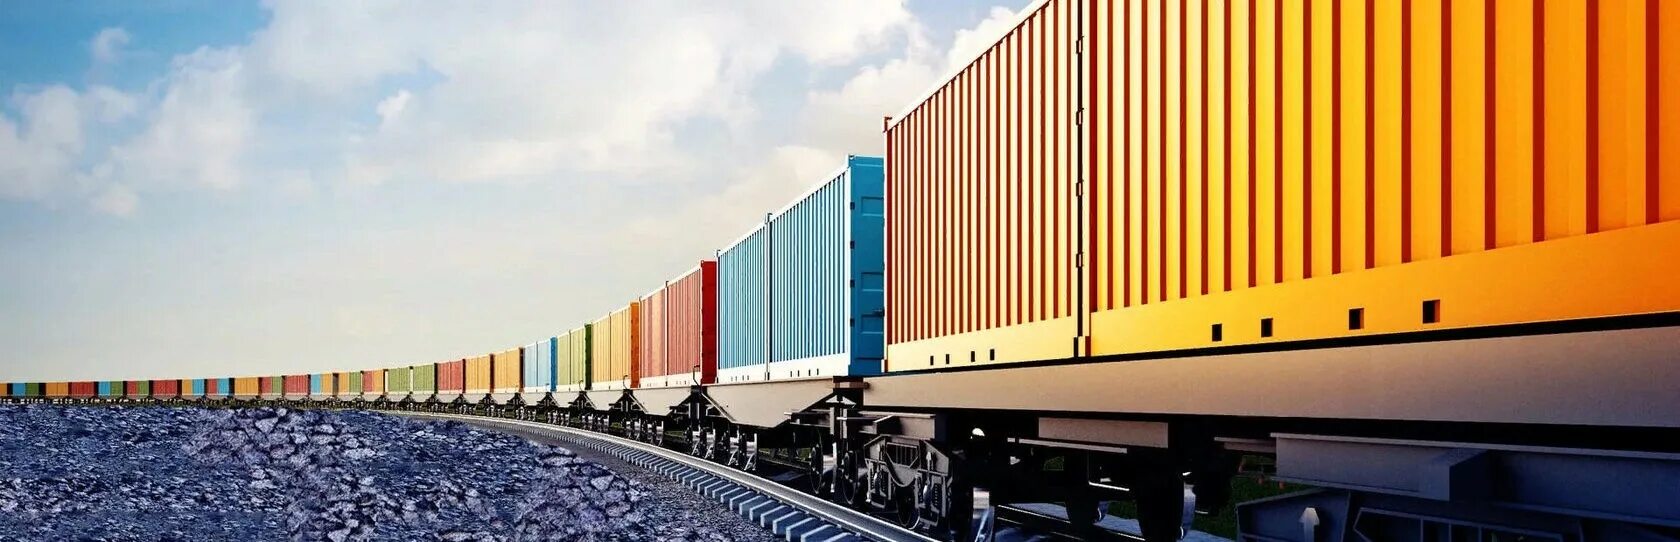 ЖД перевозки грузов. Грузовые железнодорожные перевозки. Грузовая платформа. Контейнеры грузовые железнодорожные.